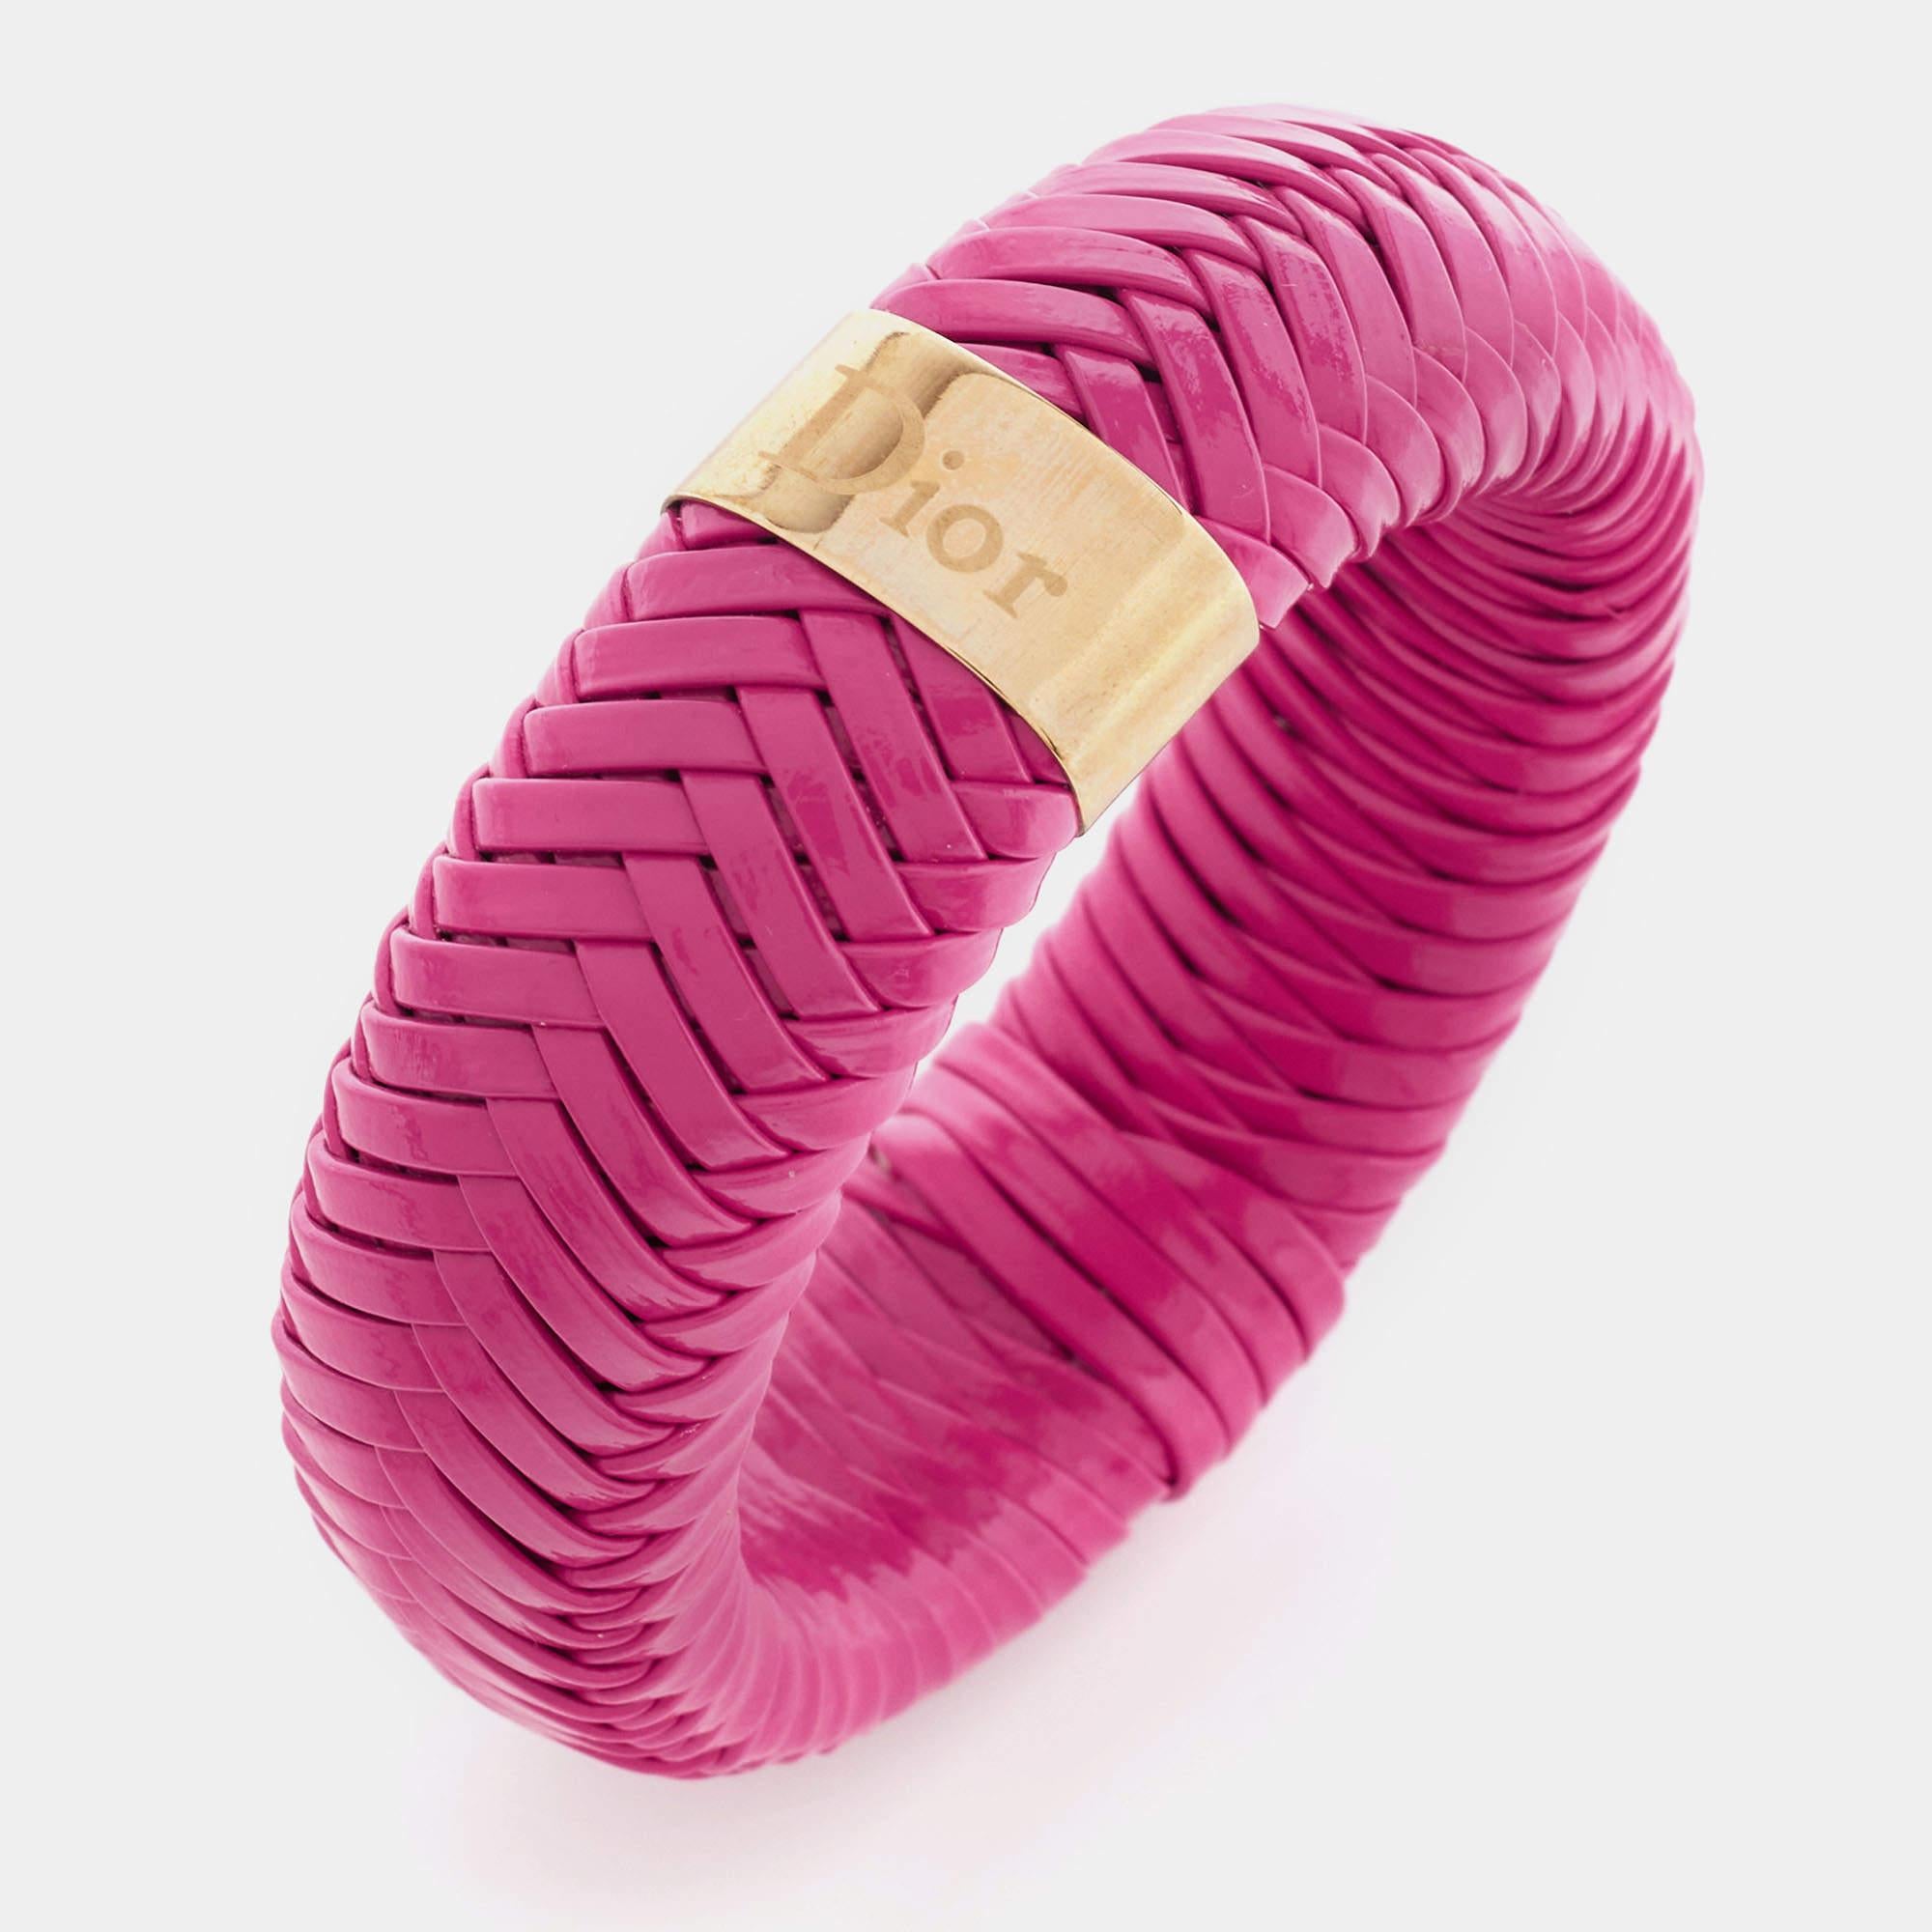 Ce bracelet Dior de grande classe peut être porté à l'infini une fois acheté. Il ne se démodera jamais. Fabriqué en cuir, ce bracelet est rehaussé de métal doré.

